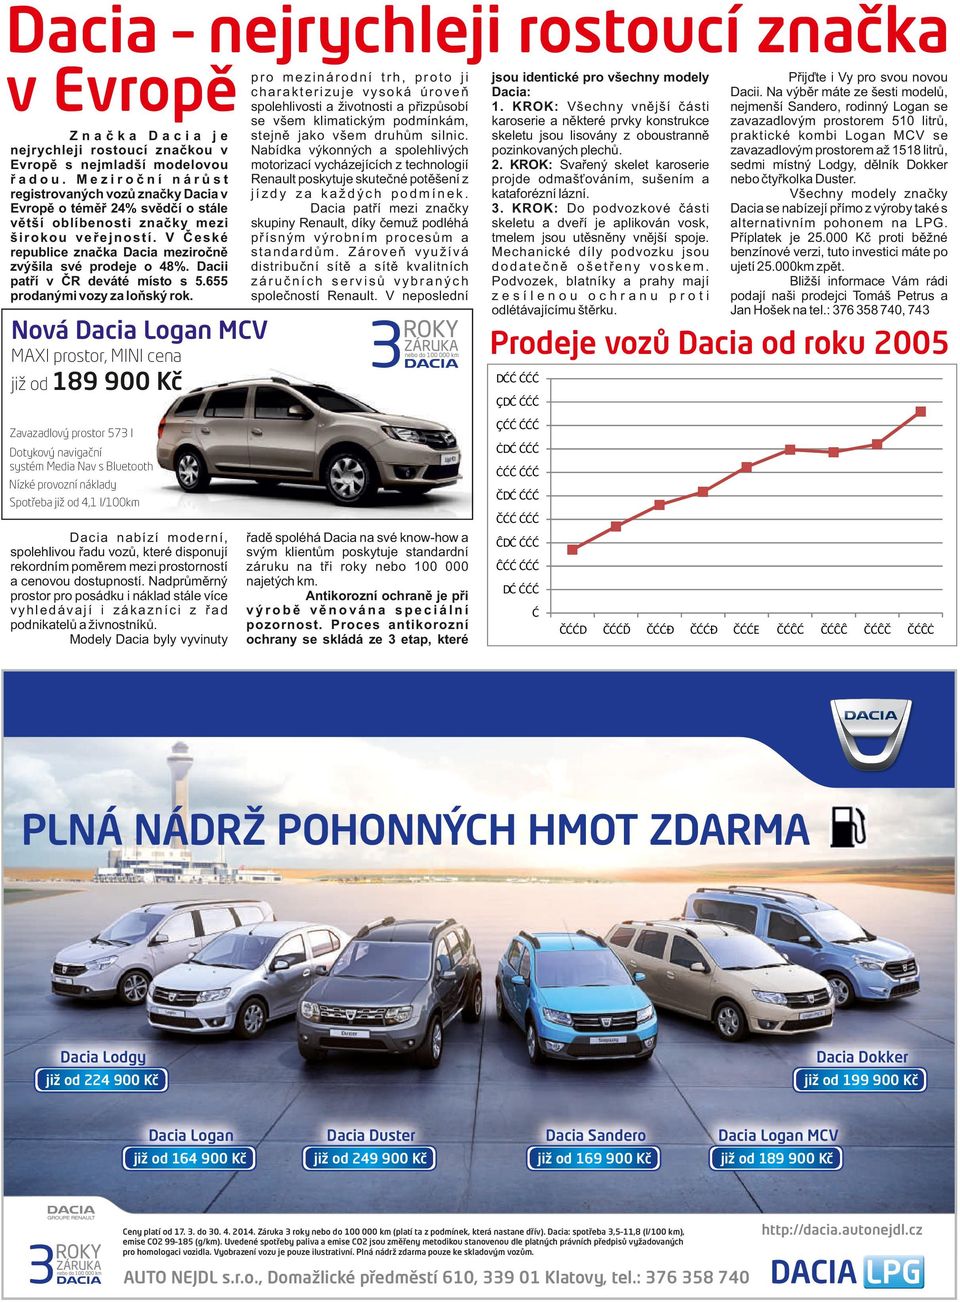 Dacia patří mezi značky skupiny Renault, díky čemuž podléhá přísným výrobním procesům a standardům. Zároveň využívá distribuční sítě a sítě kvalitních záručních servisů vybraných společností Renault.